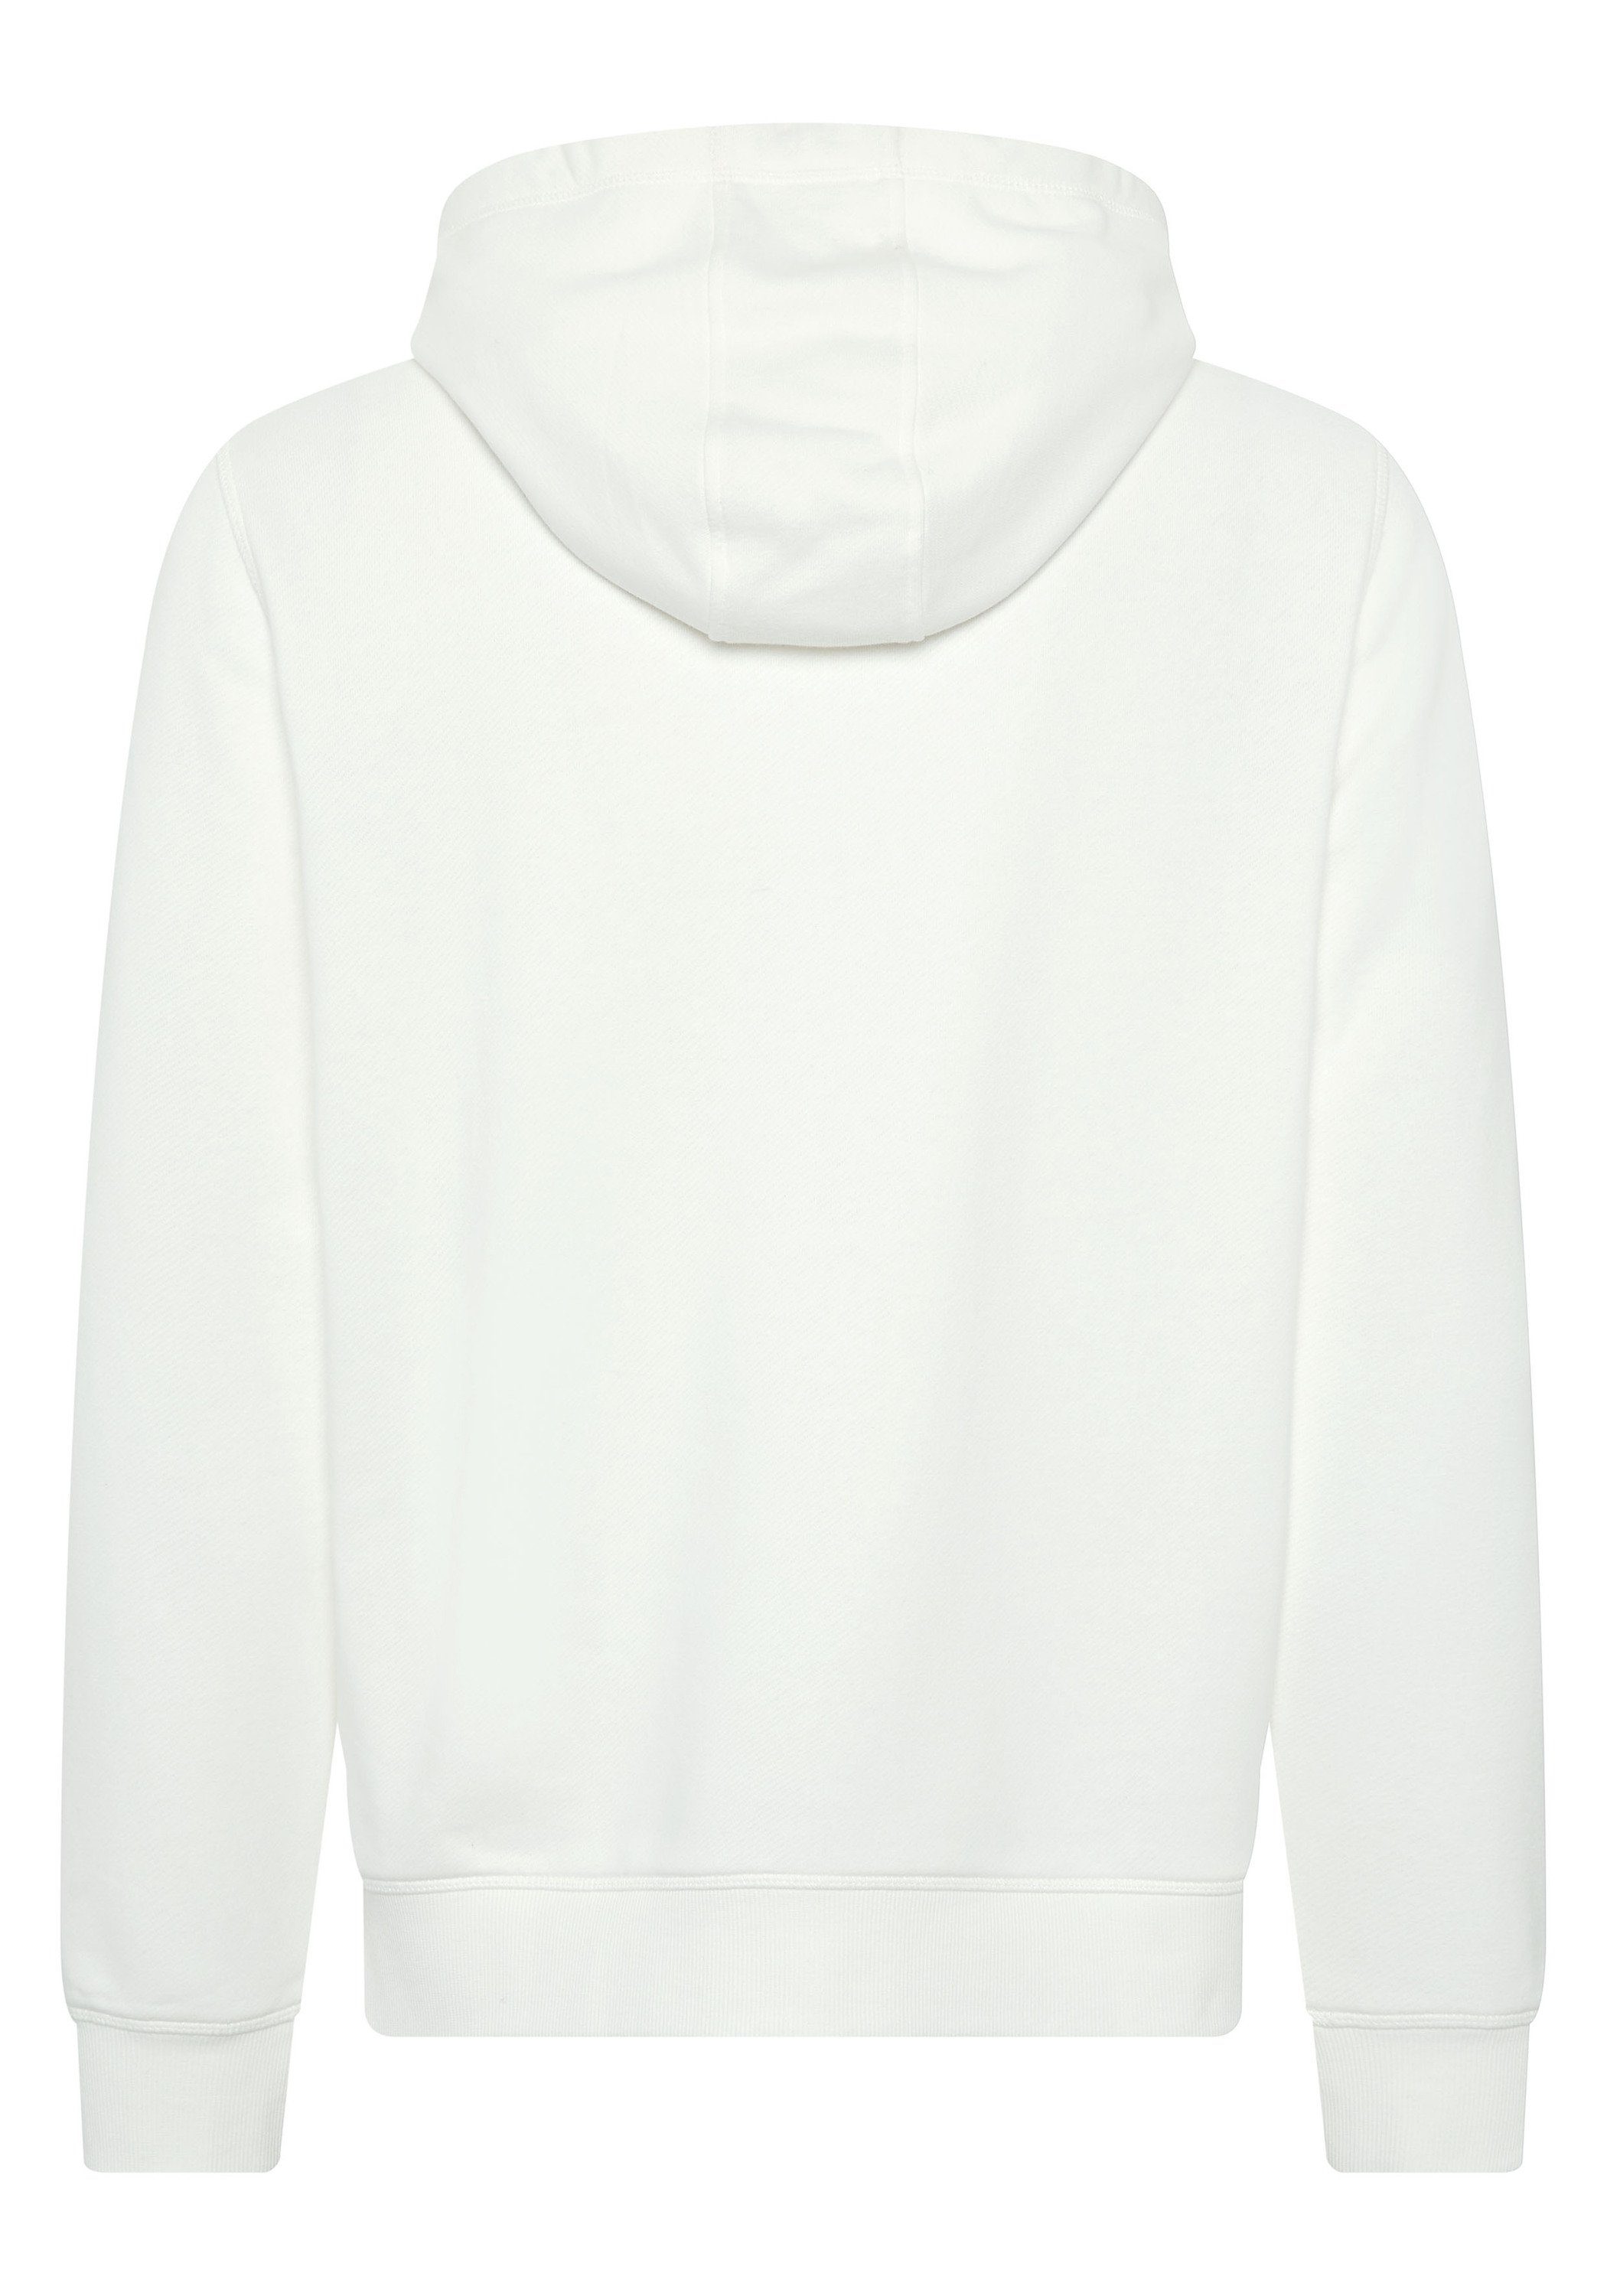 Kapuzensweatshirt mit Chiemsee 1 11-4202 Jumper-Motiv White Hoodie Star